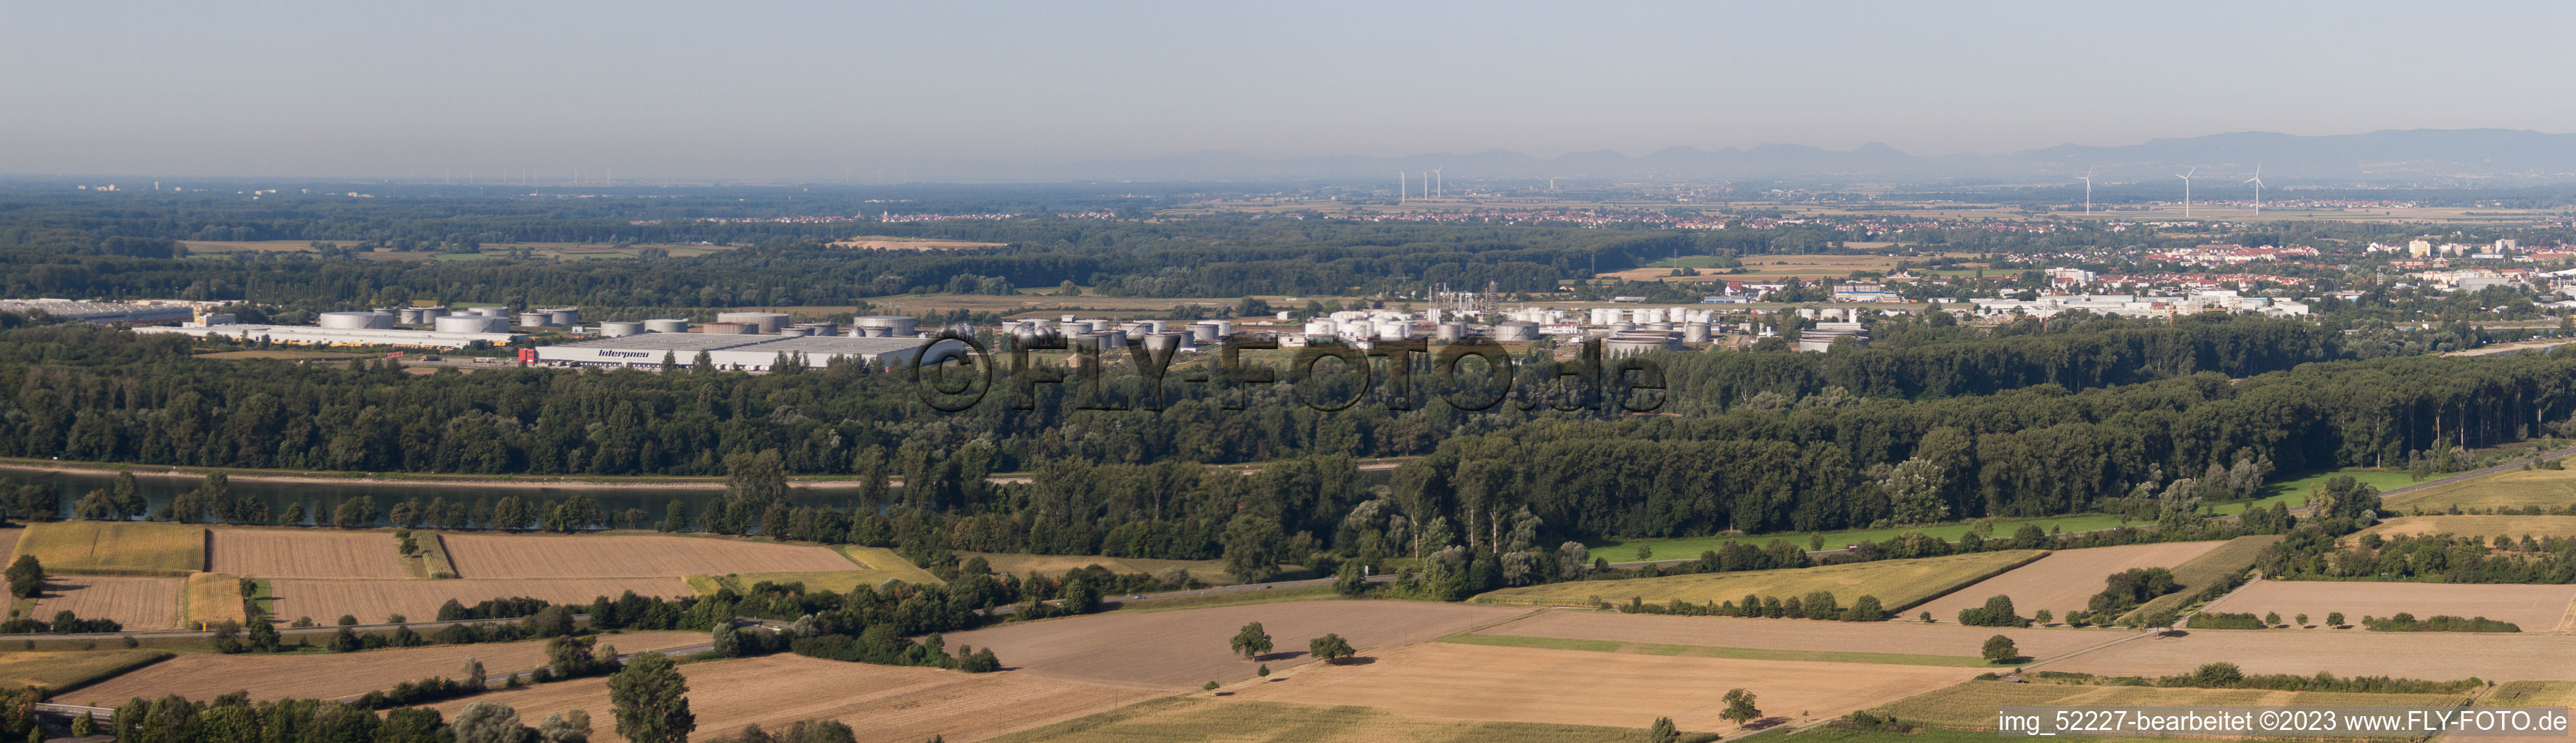 Panorama des Industriegebiet Süd in Speyer im Bundesland Rheinland-Pfalz, Deutschland